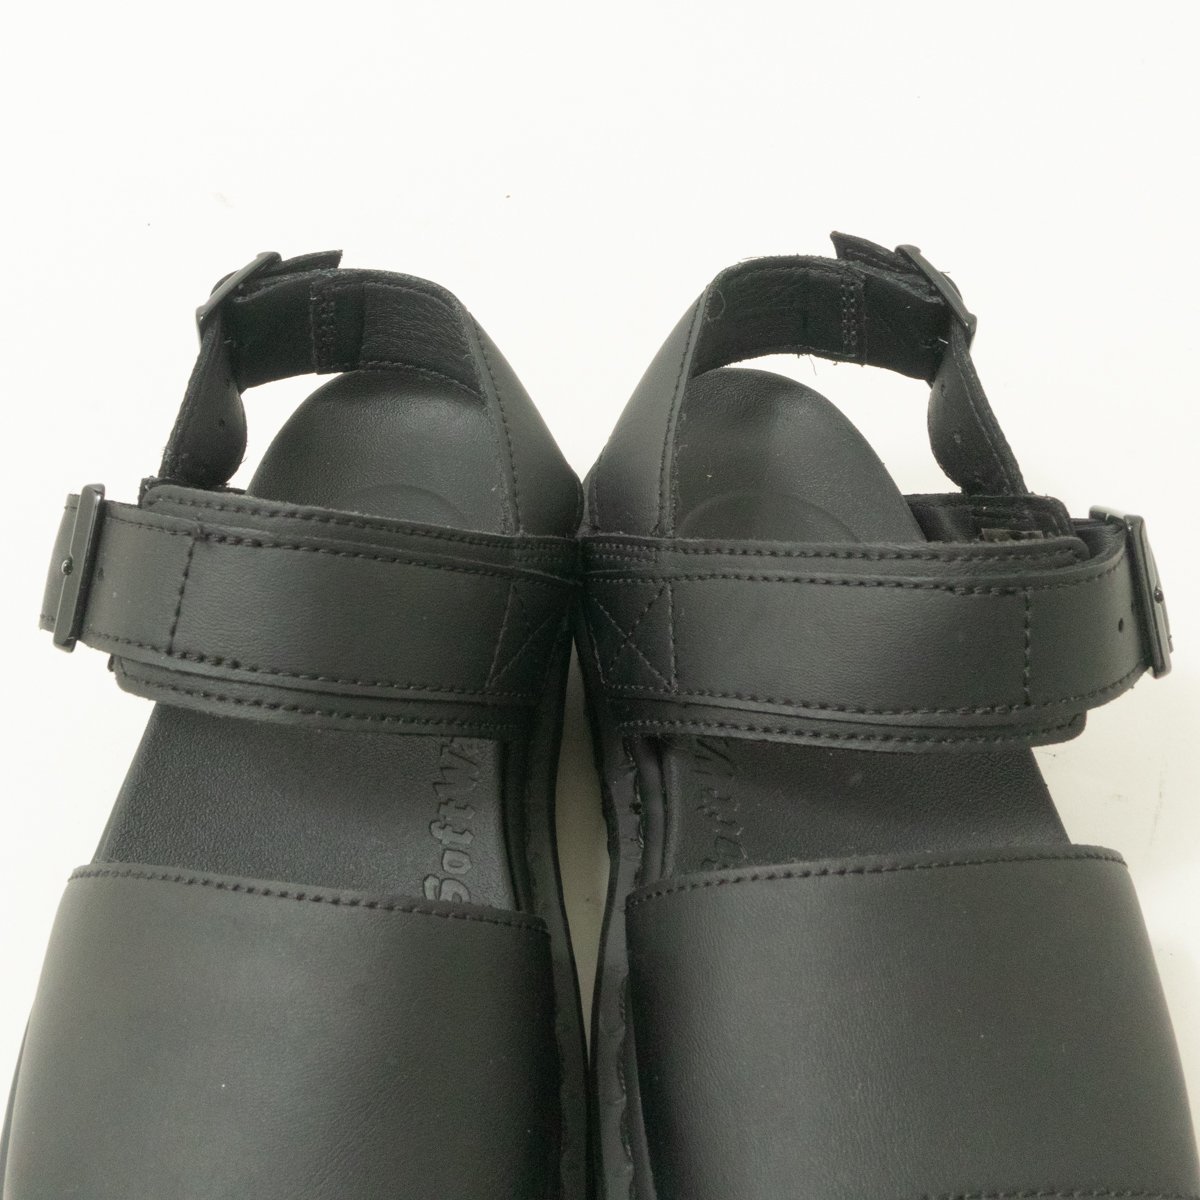 Dr.Martens ドクターマーチン サンダル ブラック 黒 UK3 22cm相当 レザー 本革 レディース シンプル カジュアル 靴下コーデ 太ベルト 靴_画像3